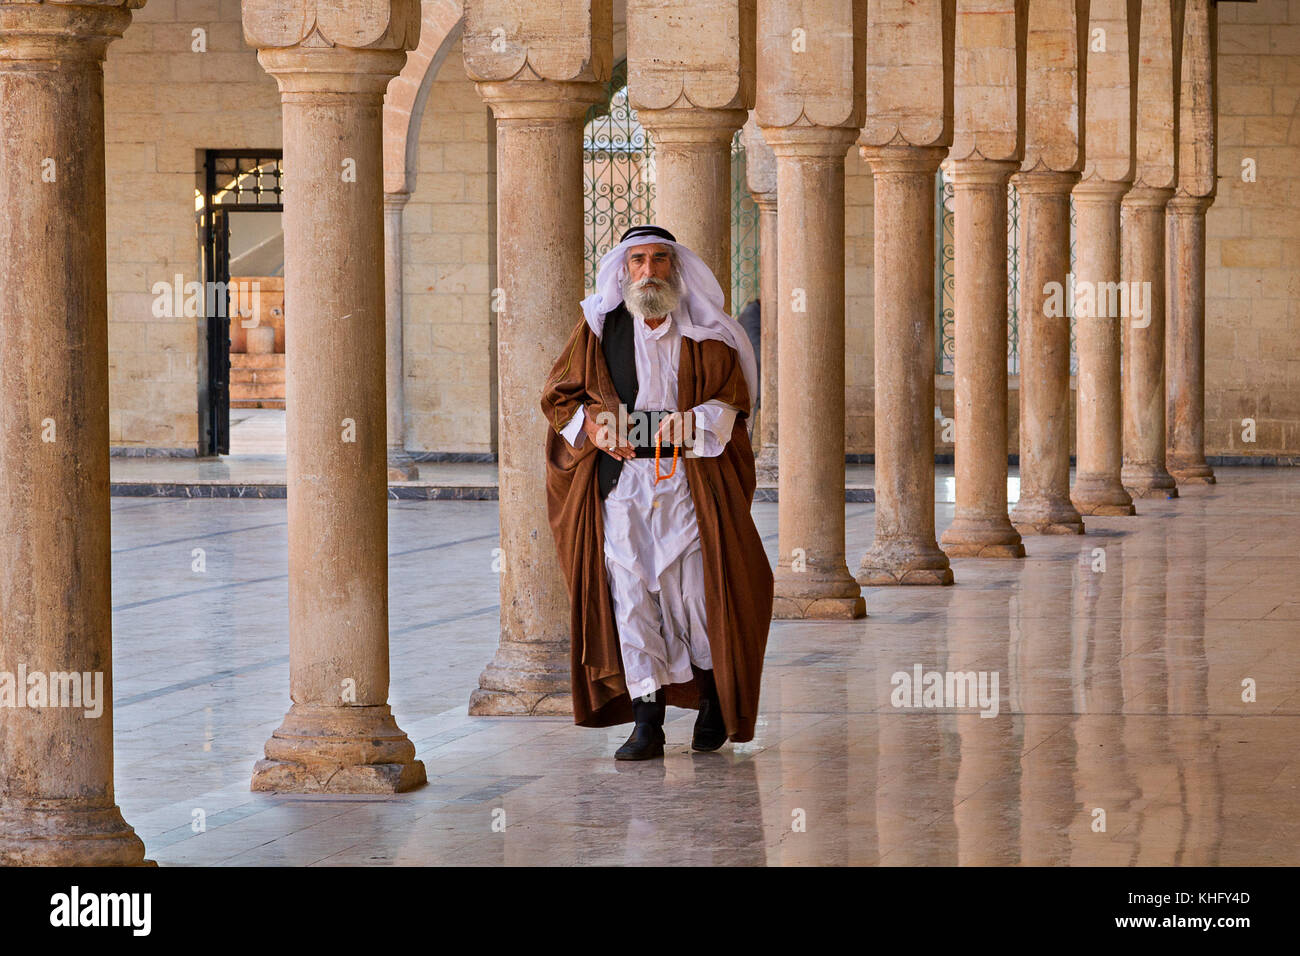 Homme local en vêtements ethniques marchant à travers les piliers dans la cour de la mosquée Mevlidi Halil à Sanliurfa, Turquie. Banque D'Images